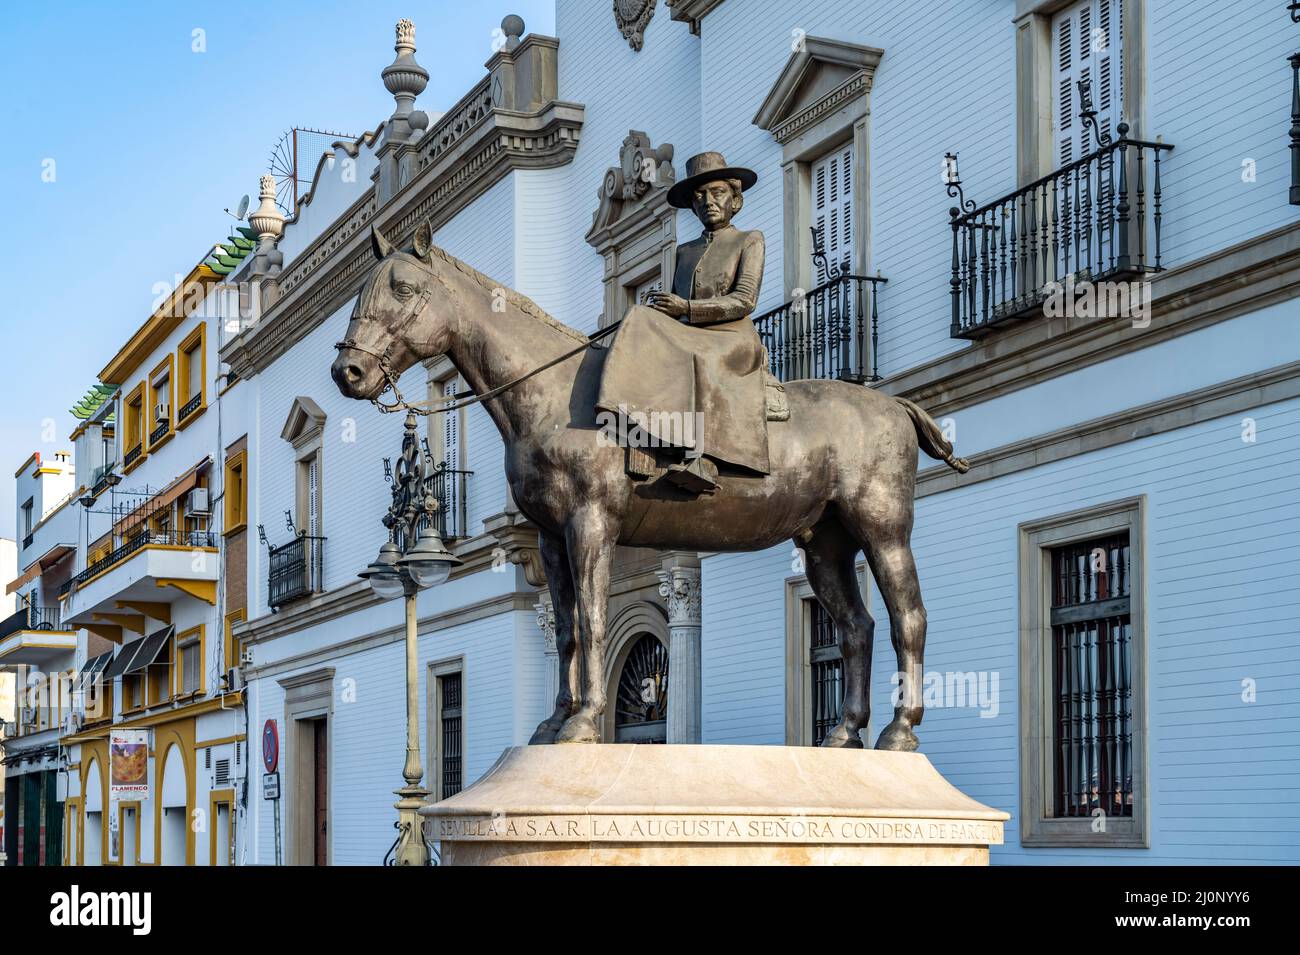 Reiterstandbild der Augusta Senora Condesa de Barcelona an der Stierkampfarena in Sevilla, Andalusien, Spanien  |  Equestrian statue of  Augusta Senor Stock Photo